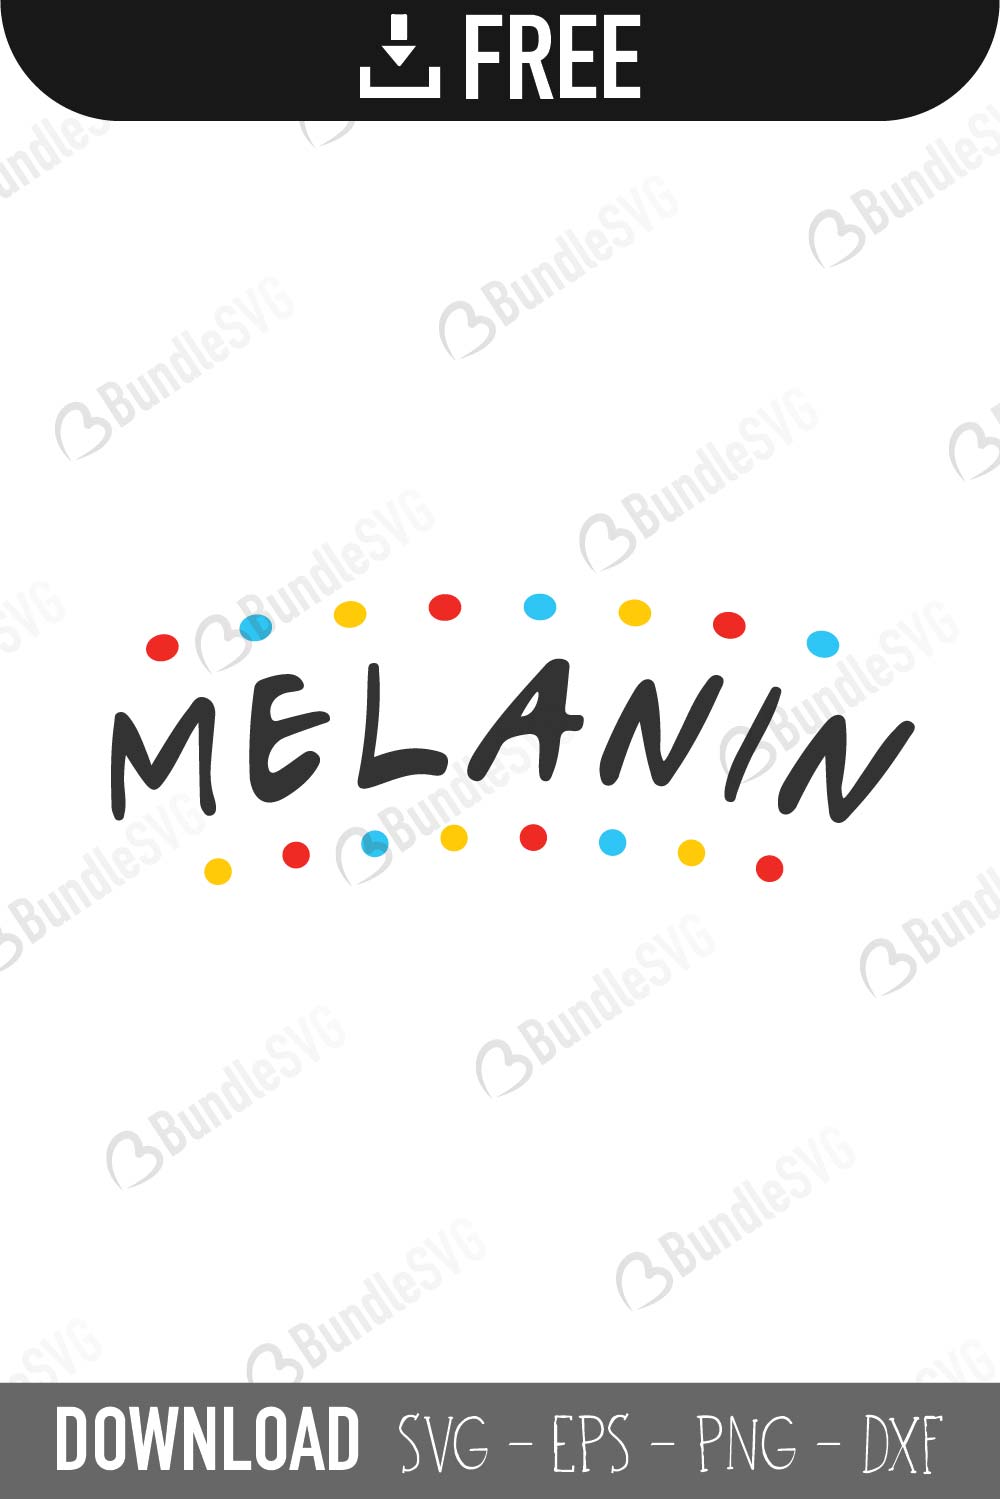 Download Melanin SVG Cut Files Free Download | BundleSVG.com